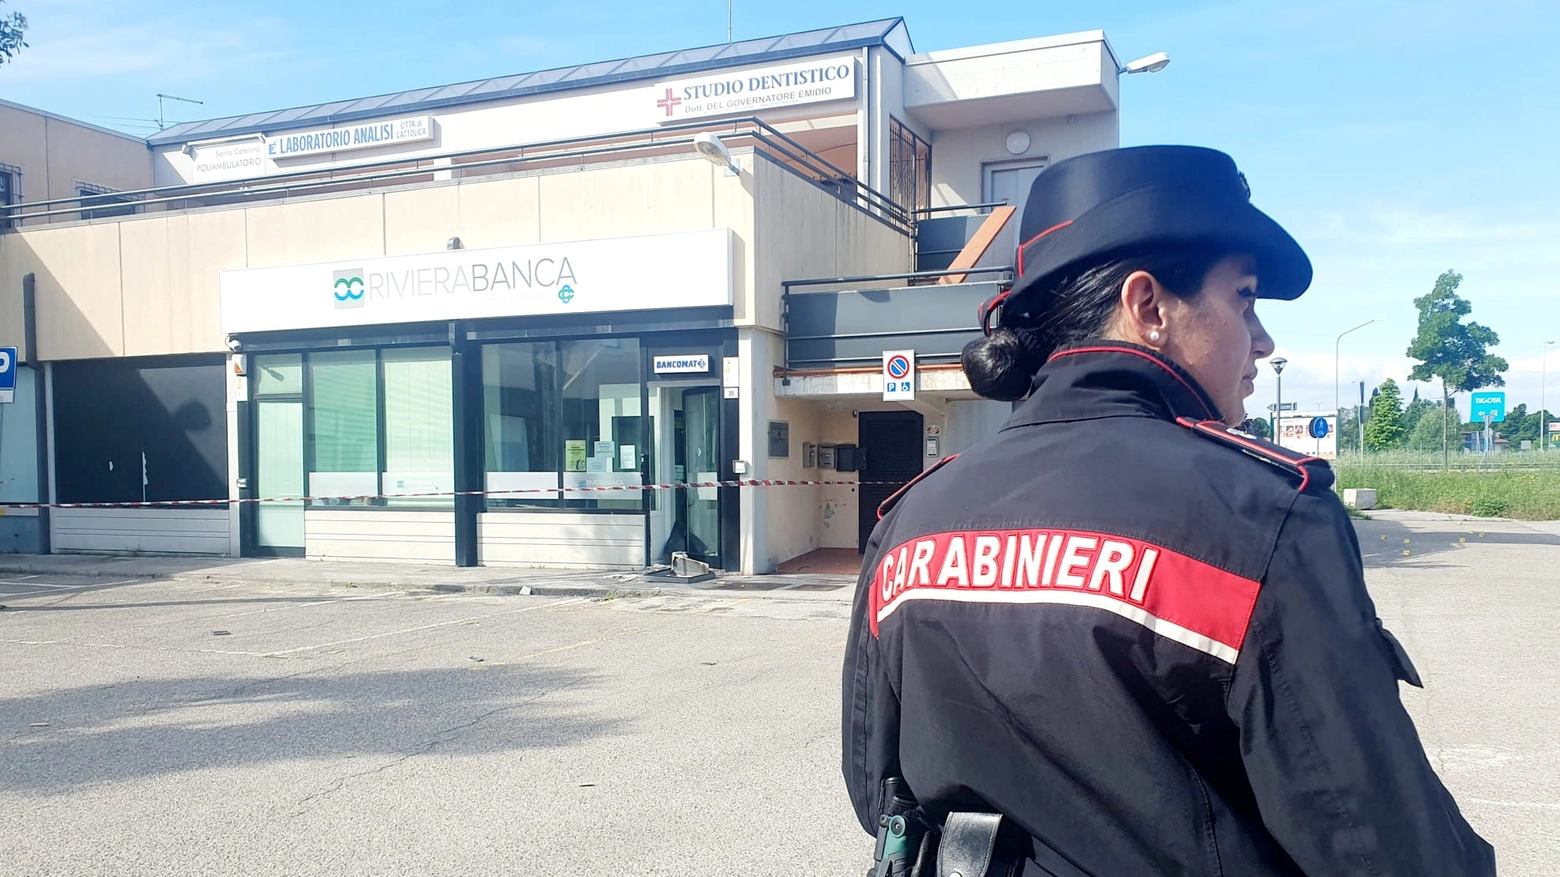 Uno dei ladri è rimasto ferito durante l'assalto al bancomat di RivieraBanca di Cattolica (foto Migliorini)